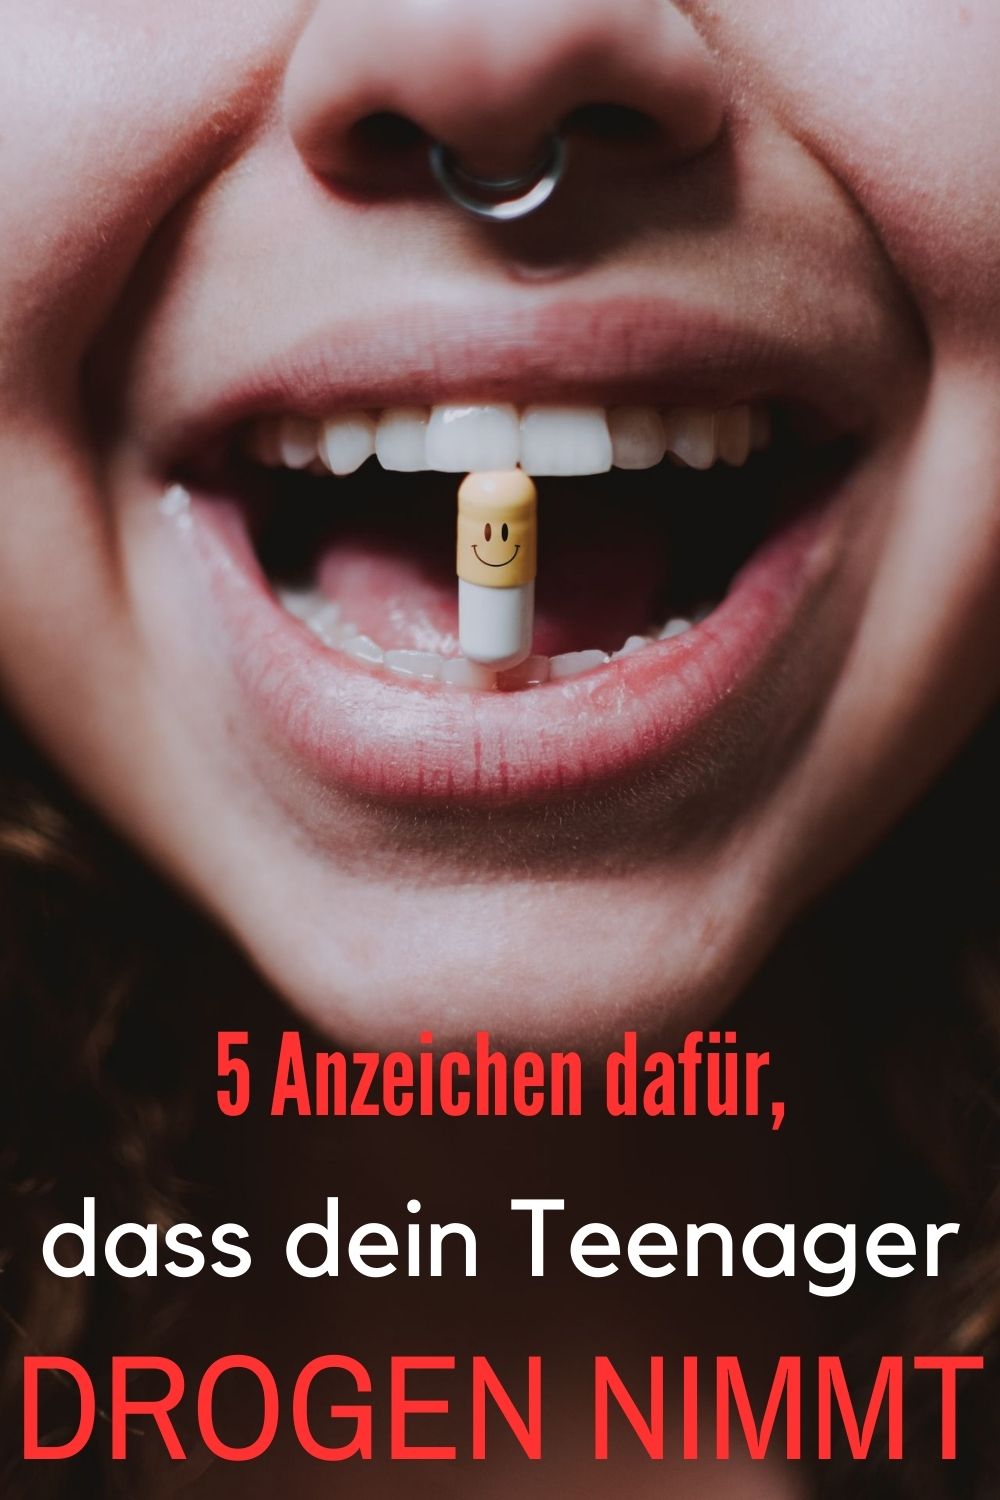 5-Anzeichen-dafuer-dass-dein-Teenager-Drogen-nimmt